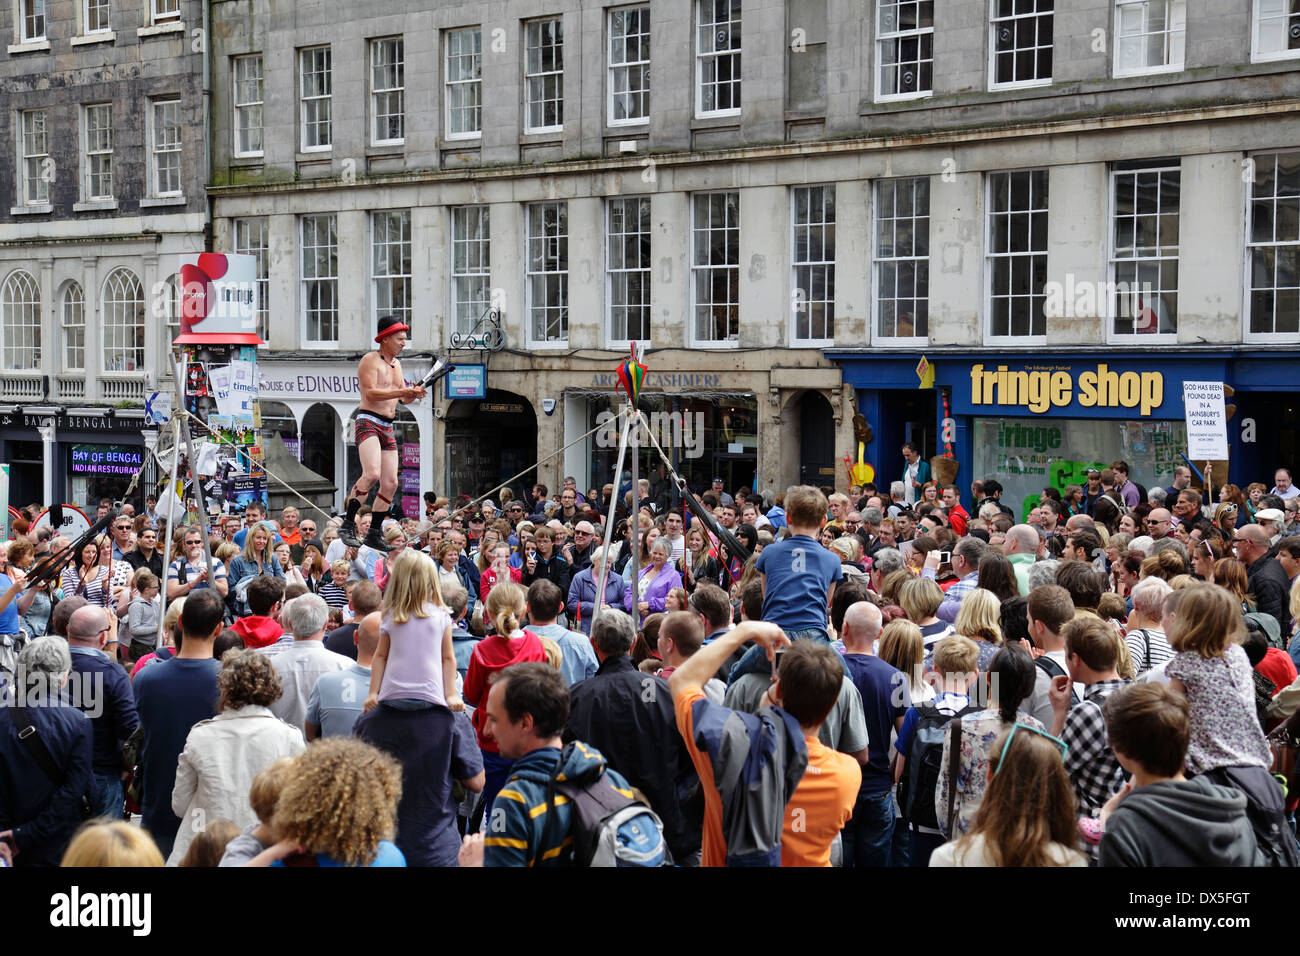 Street Performer Kwabana Lindsay auf einem Slack Seil unterhalten eine Menge Leute während des Edinburgh Festival Fringe, Schottland, Großbritannien Stockfoto